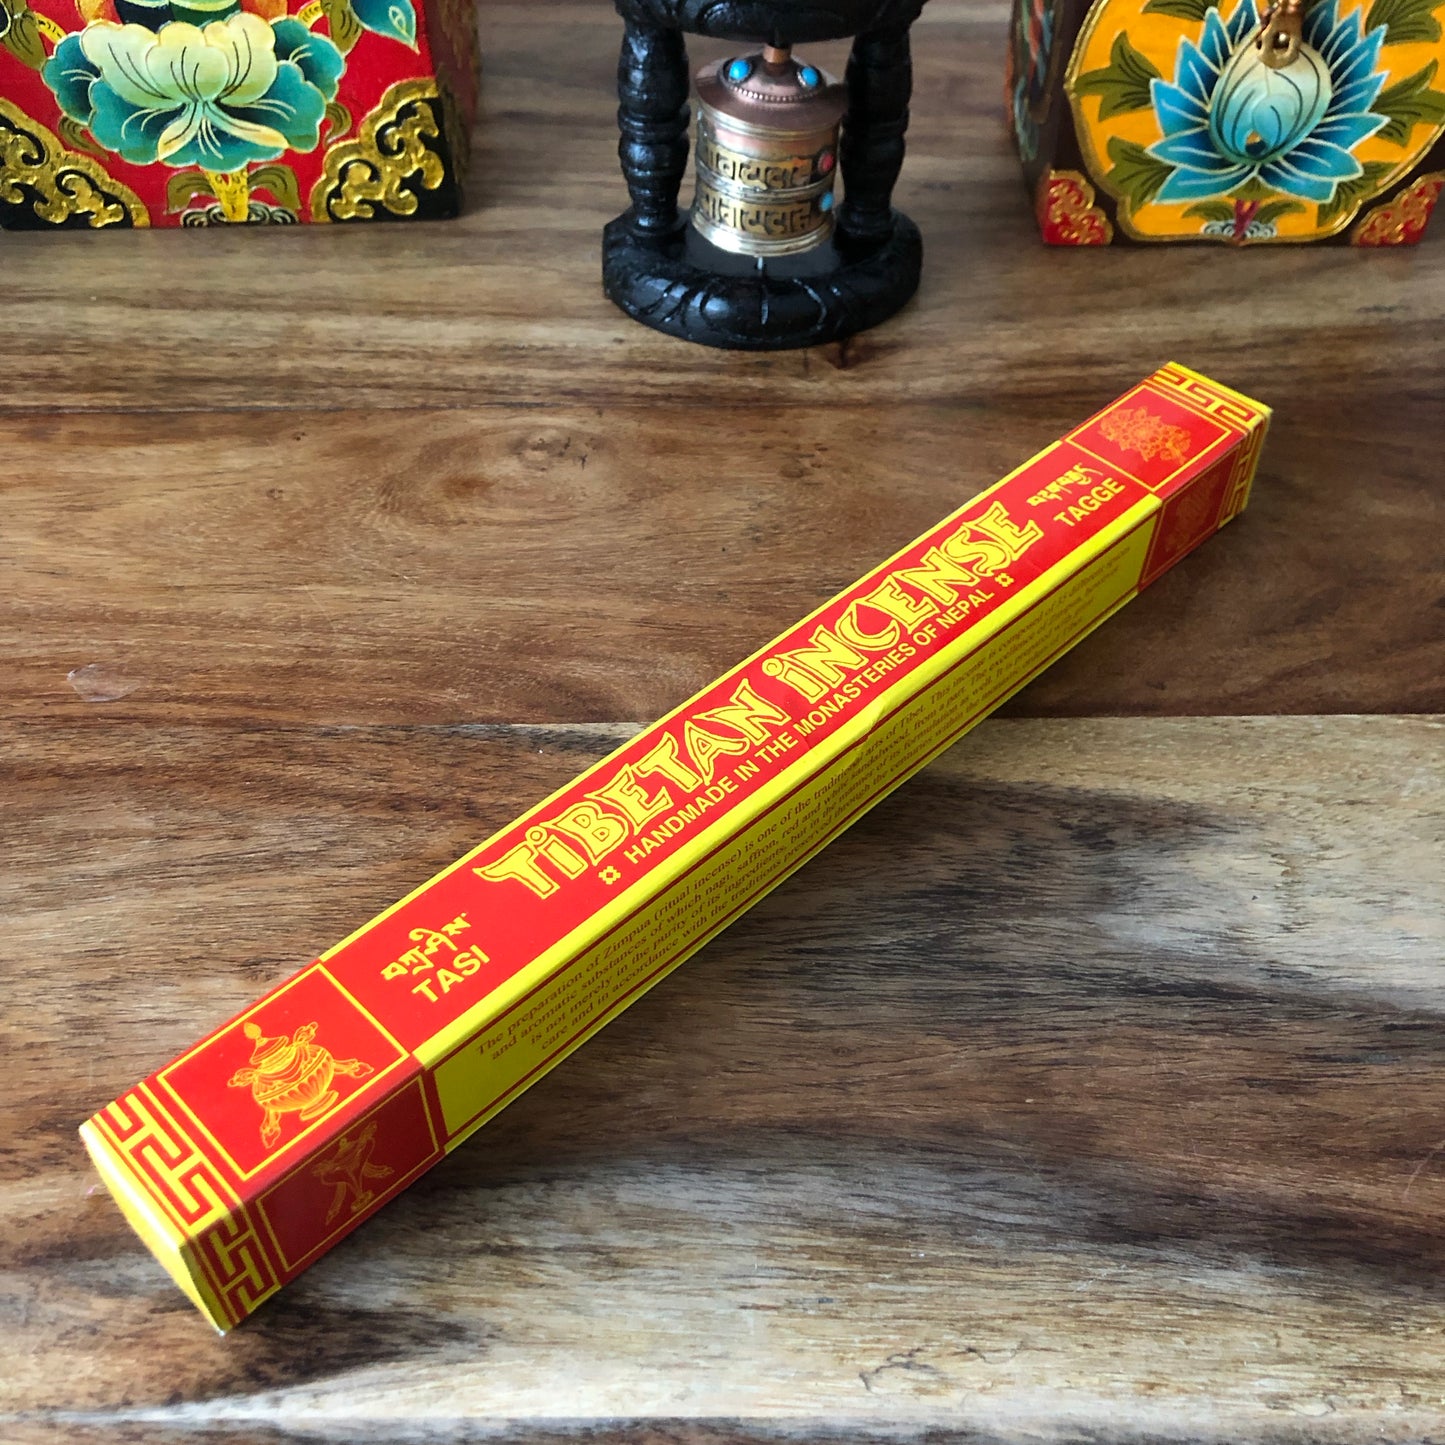 Tasi Taggi Tibetan Incense